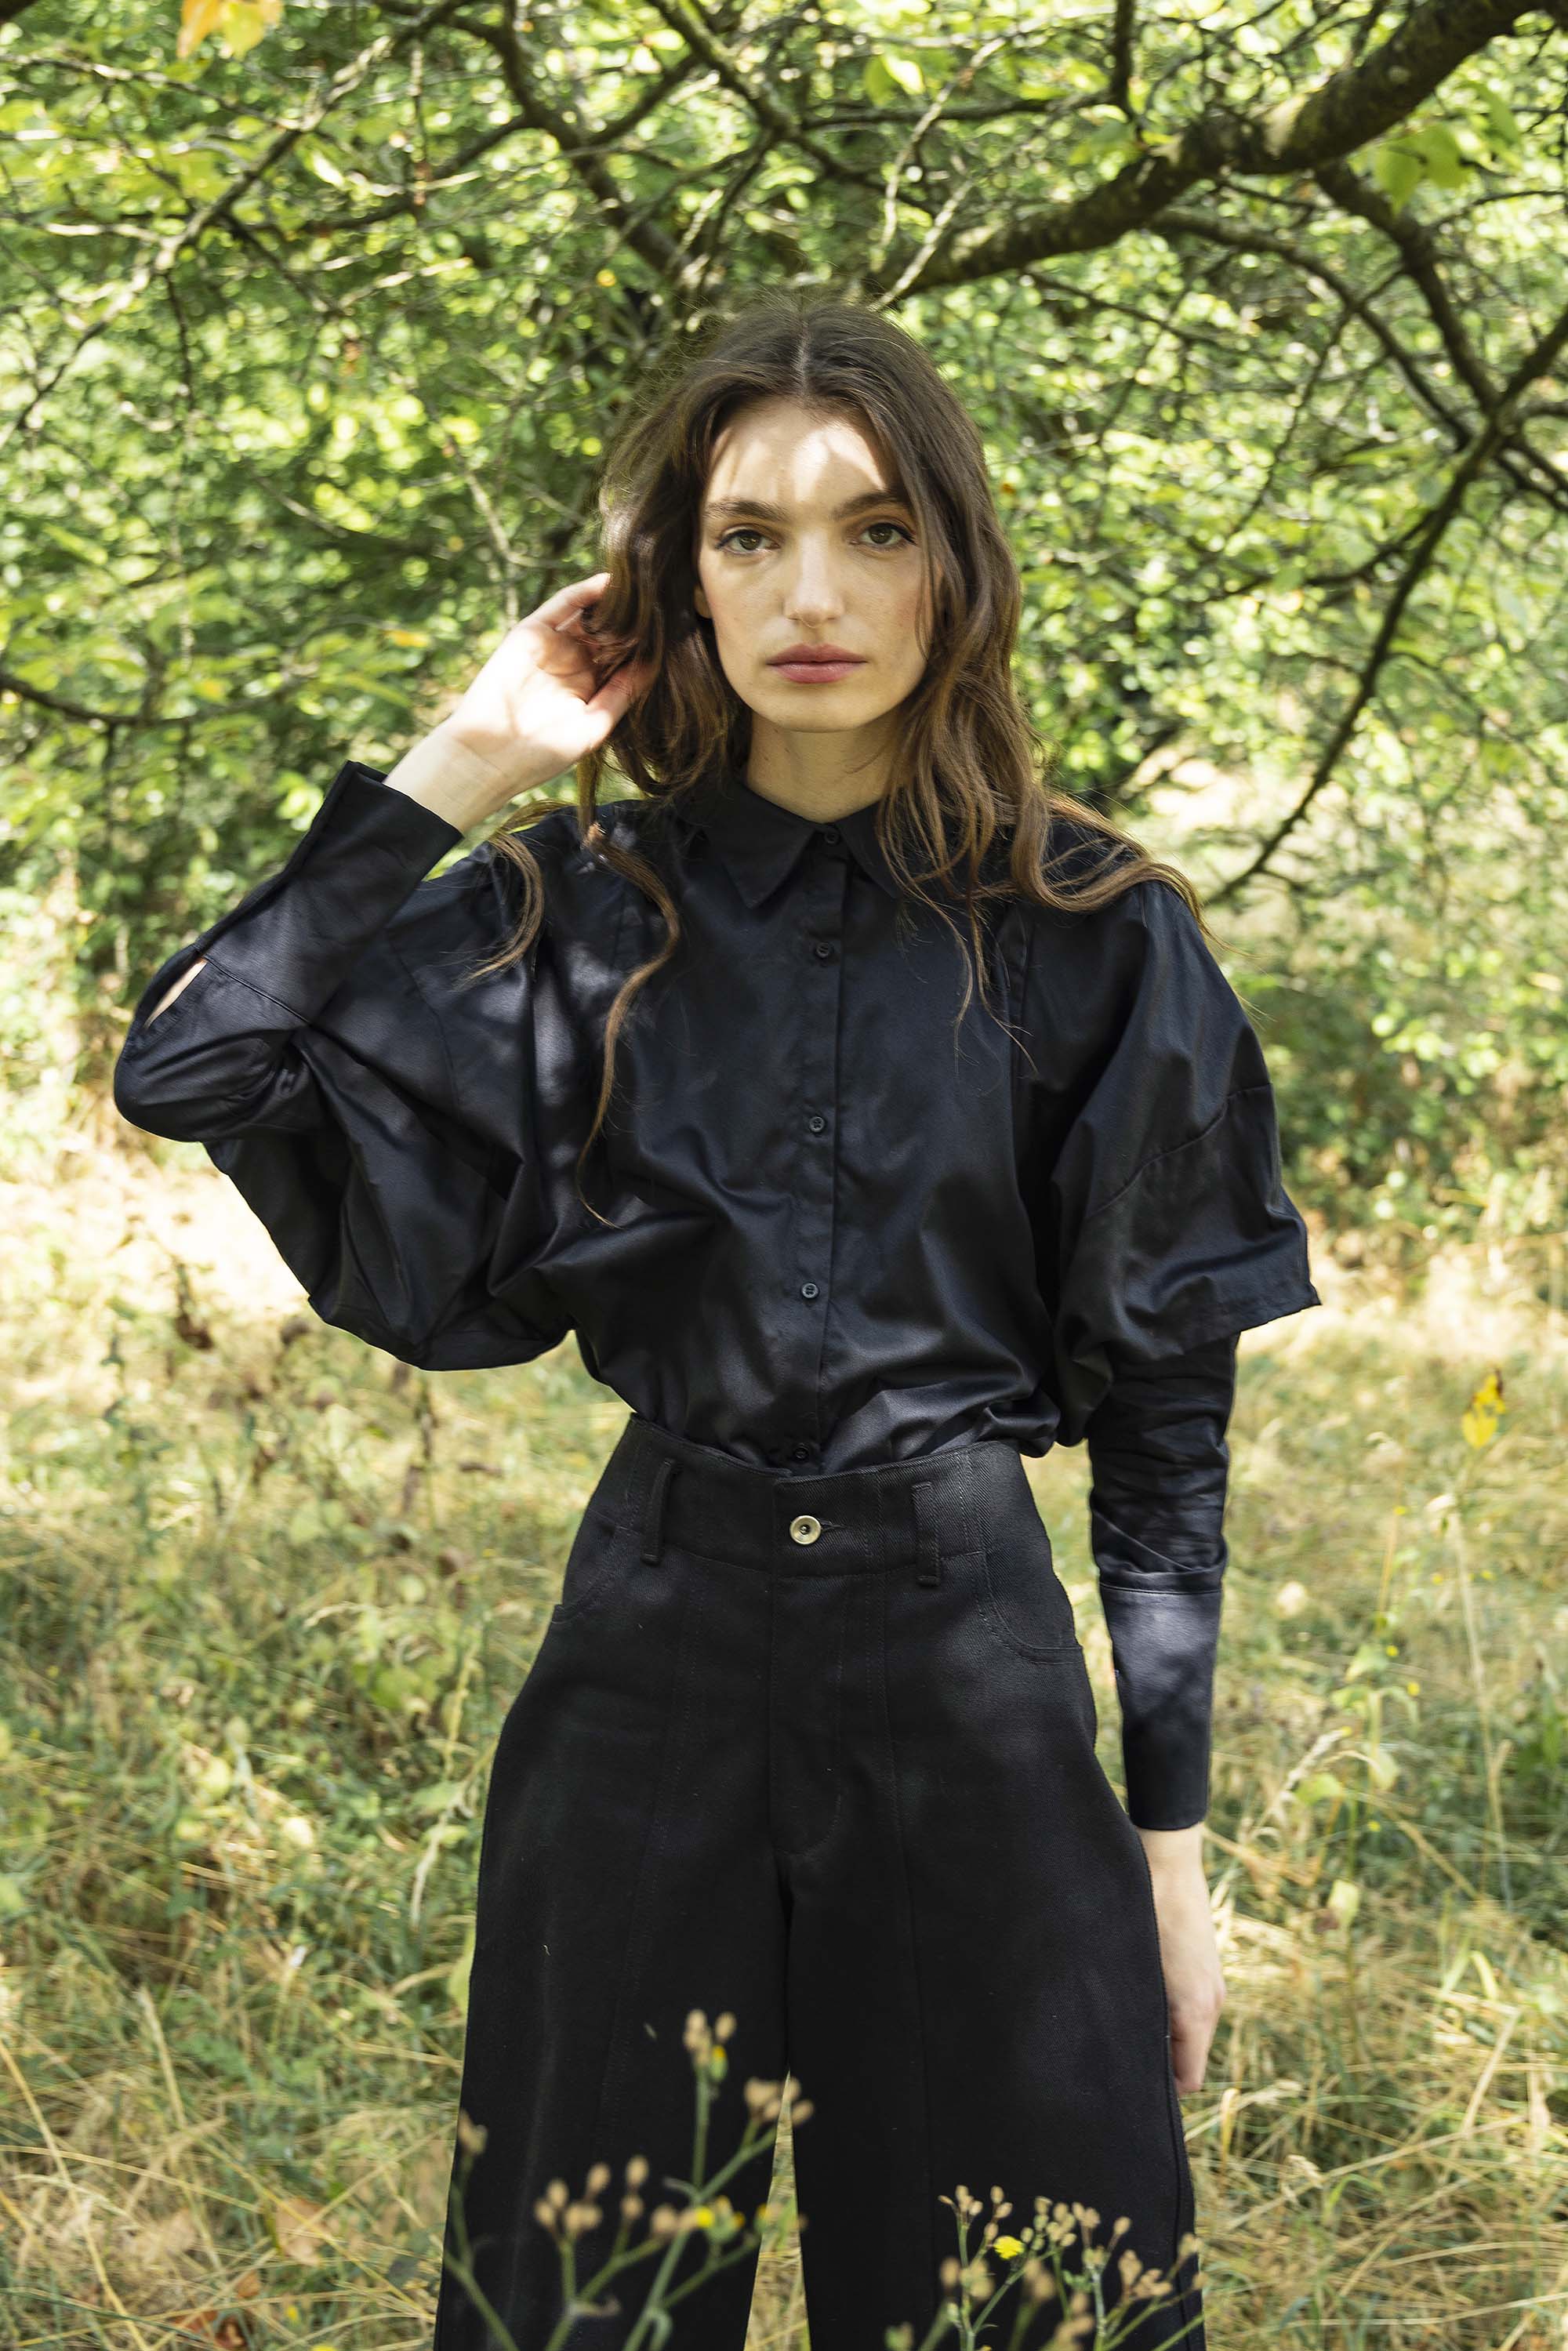 Chemise Laria Noir classique intemporelle, la chemise dessine la silhouette